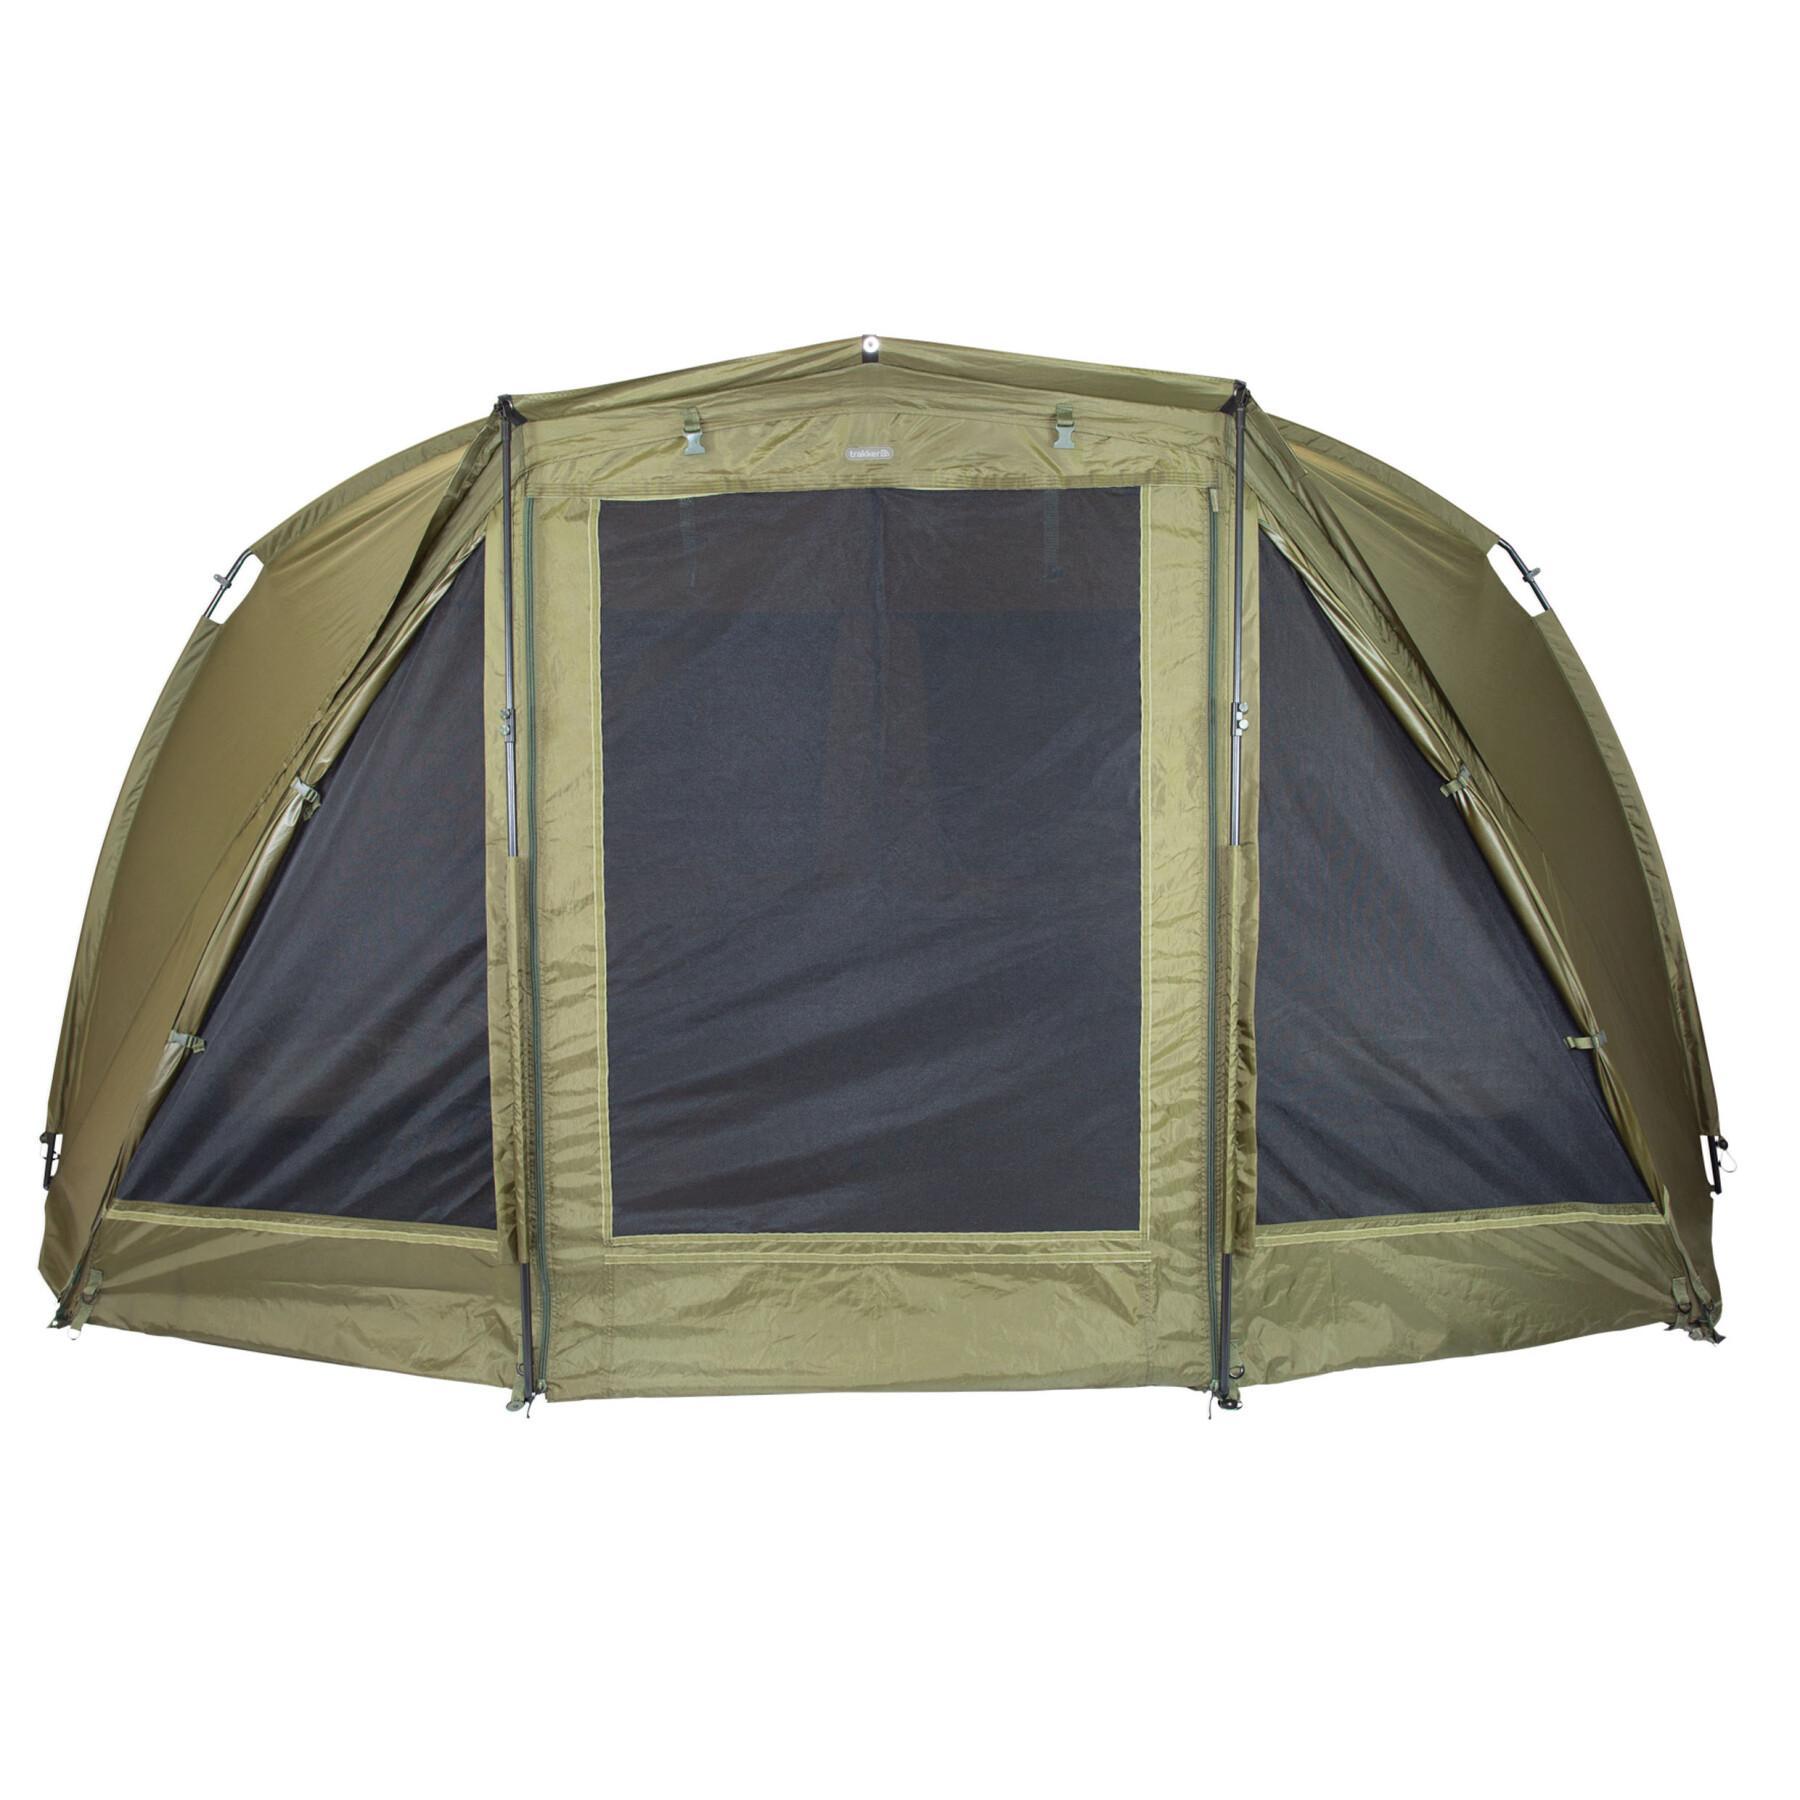 Tente Trakker tempest 200 shelter